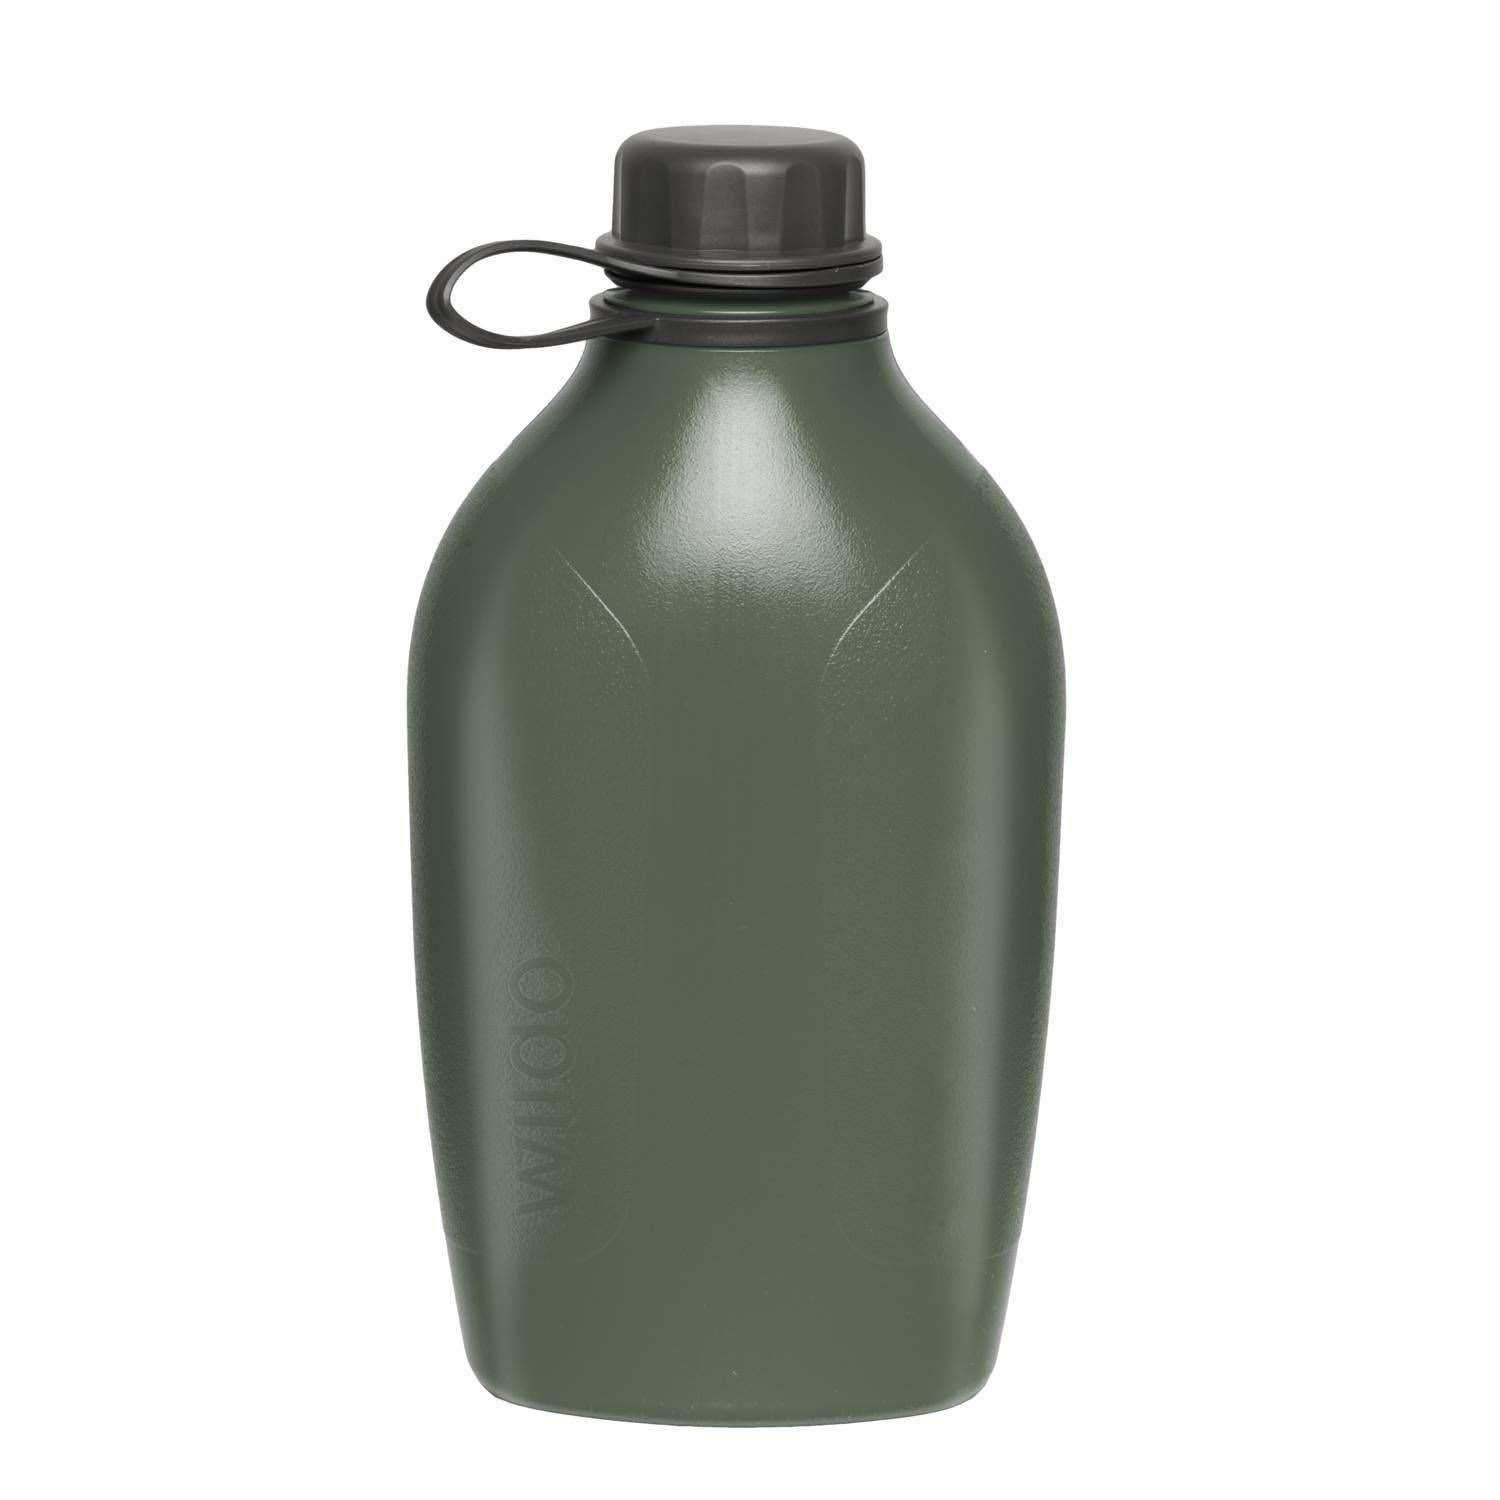 Wildo Explorer Bottle (1 LITR) Olive Green